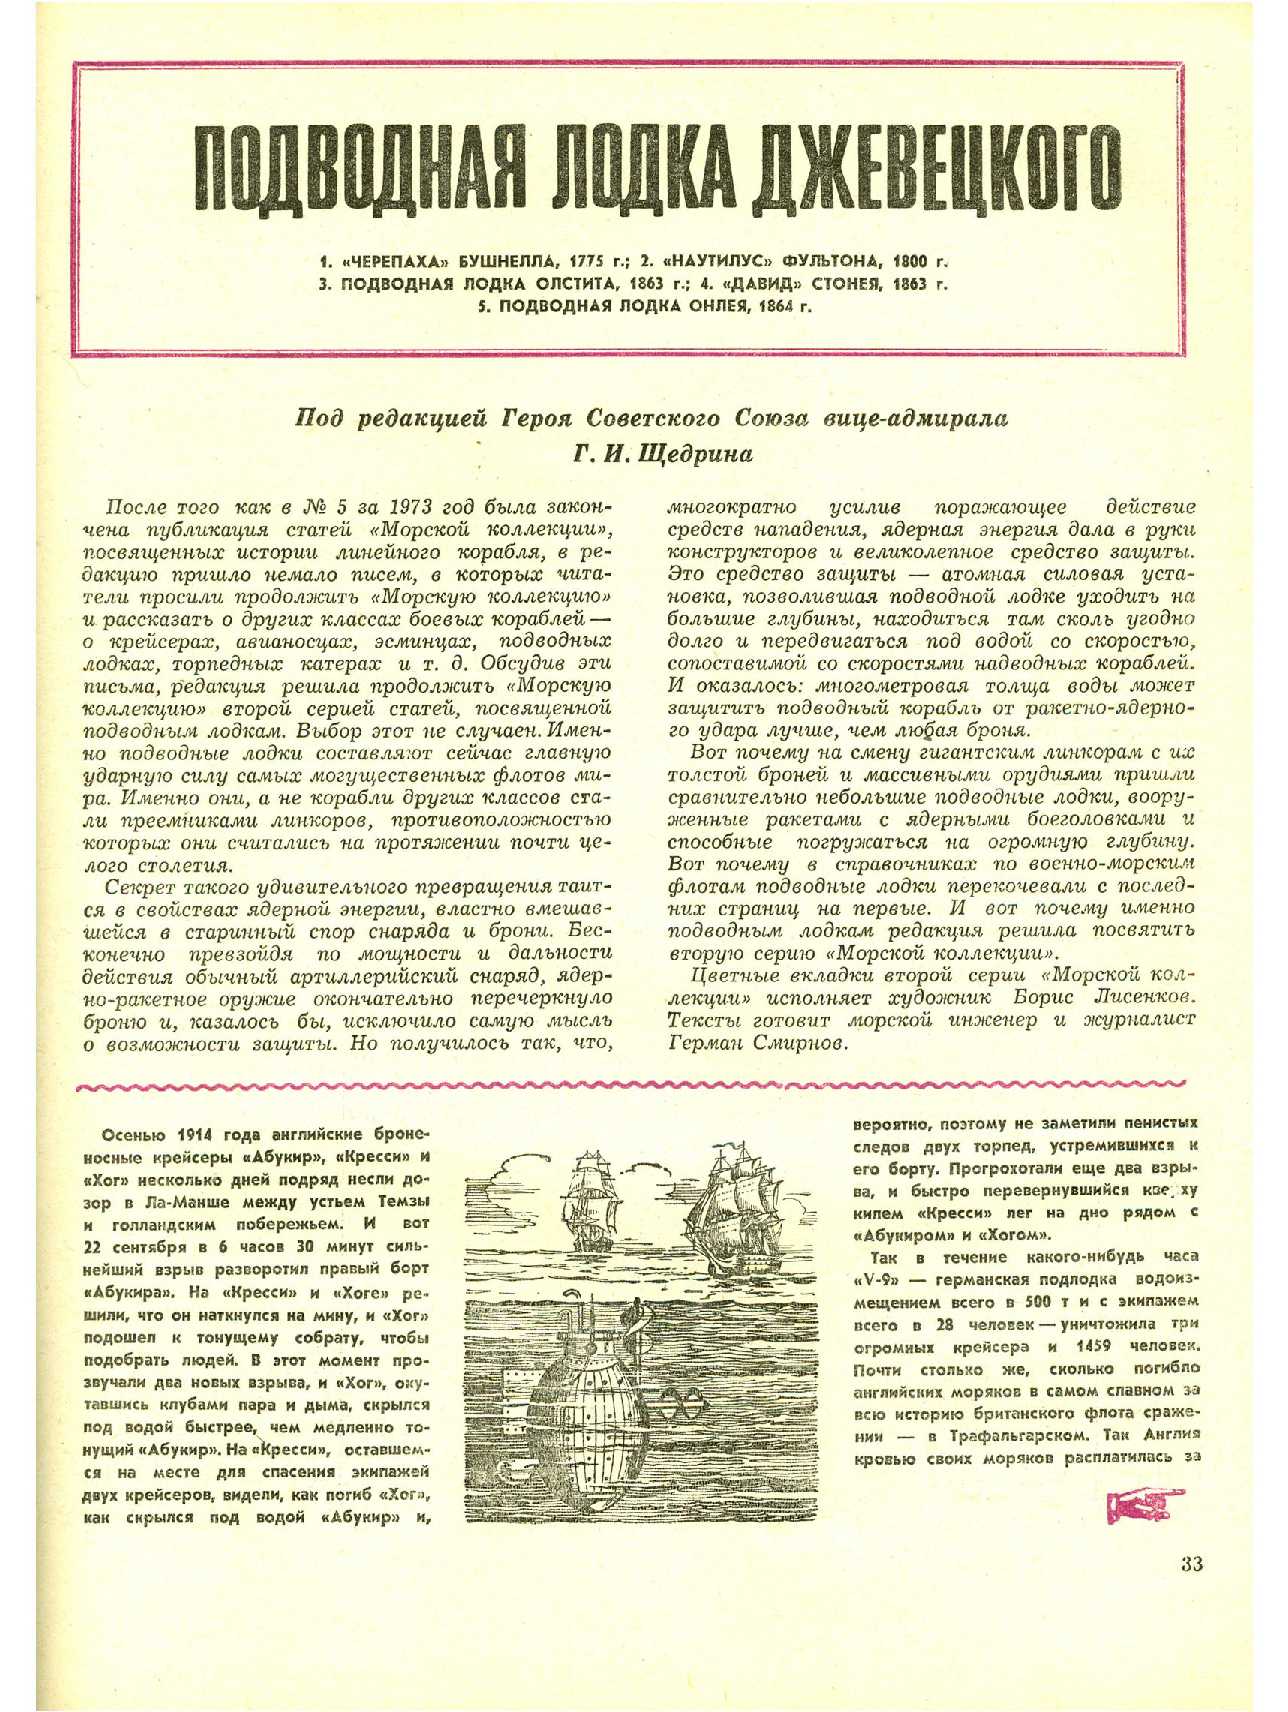 МК 10, 1973, 33 c.